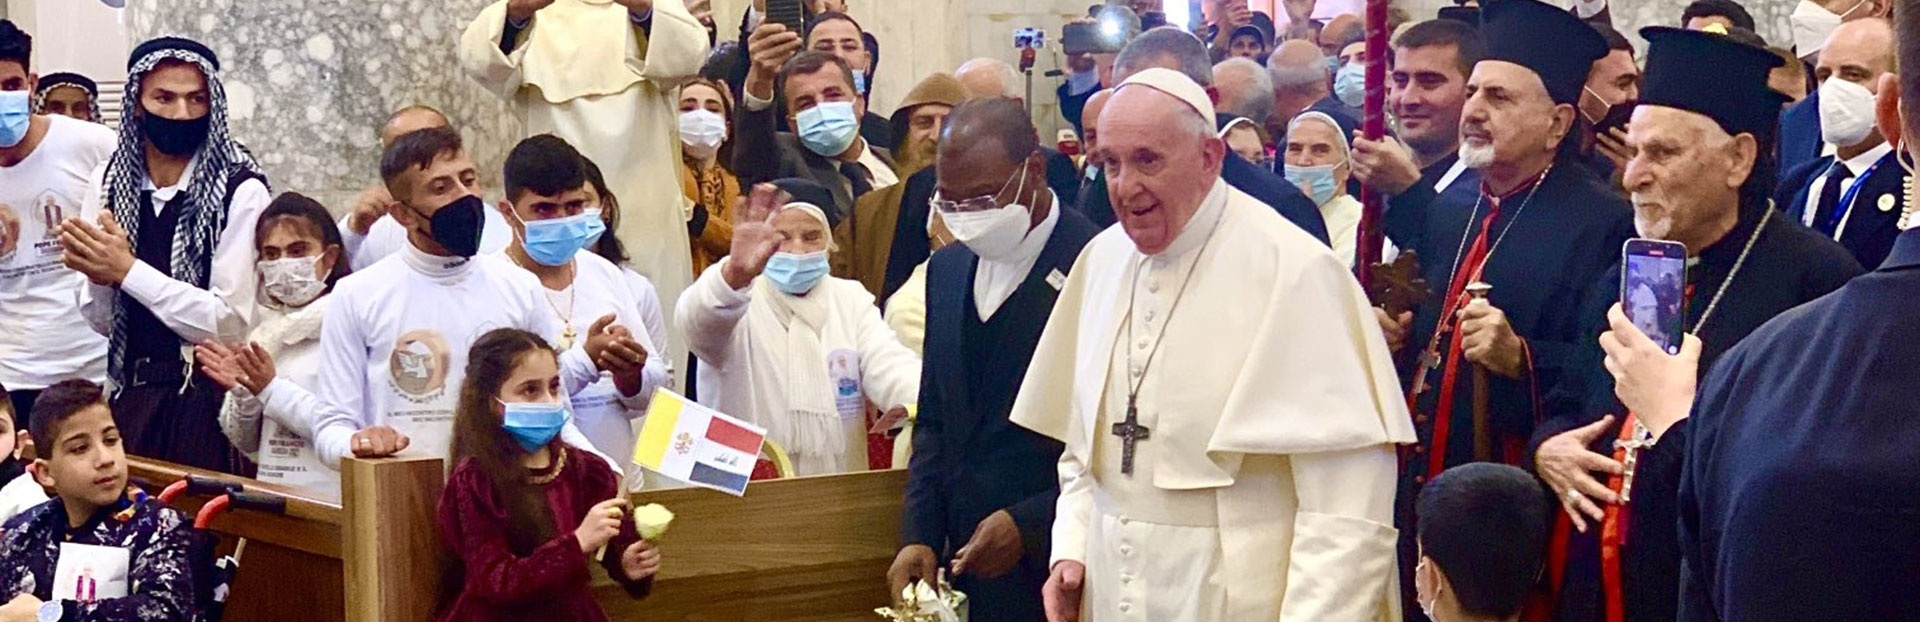 Padre Cassar: il Papa in Iraq ha seminato pace e speranza